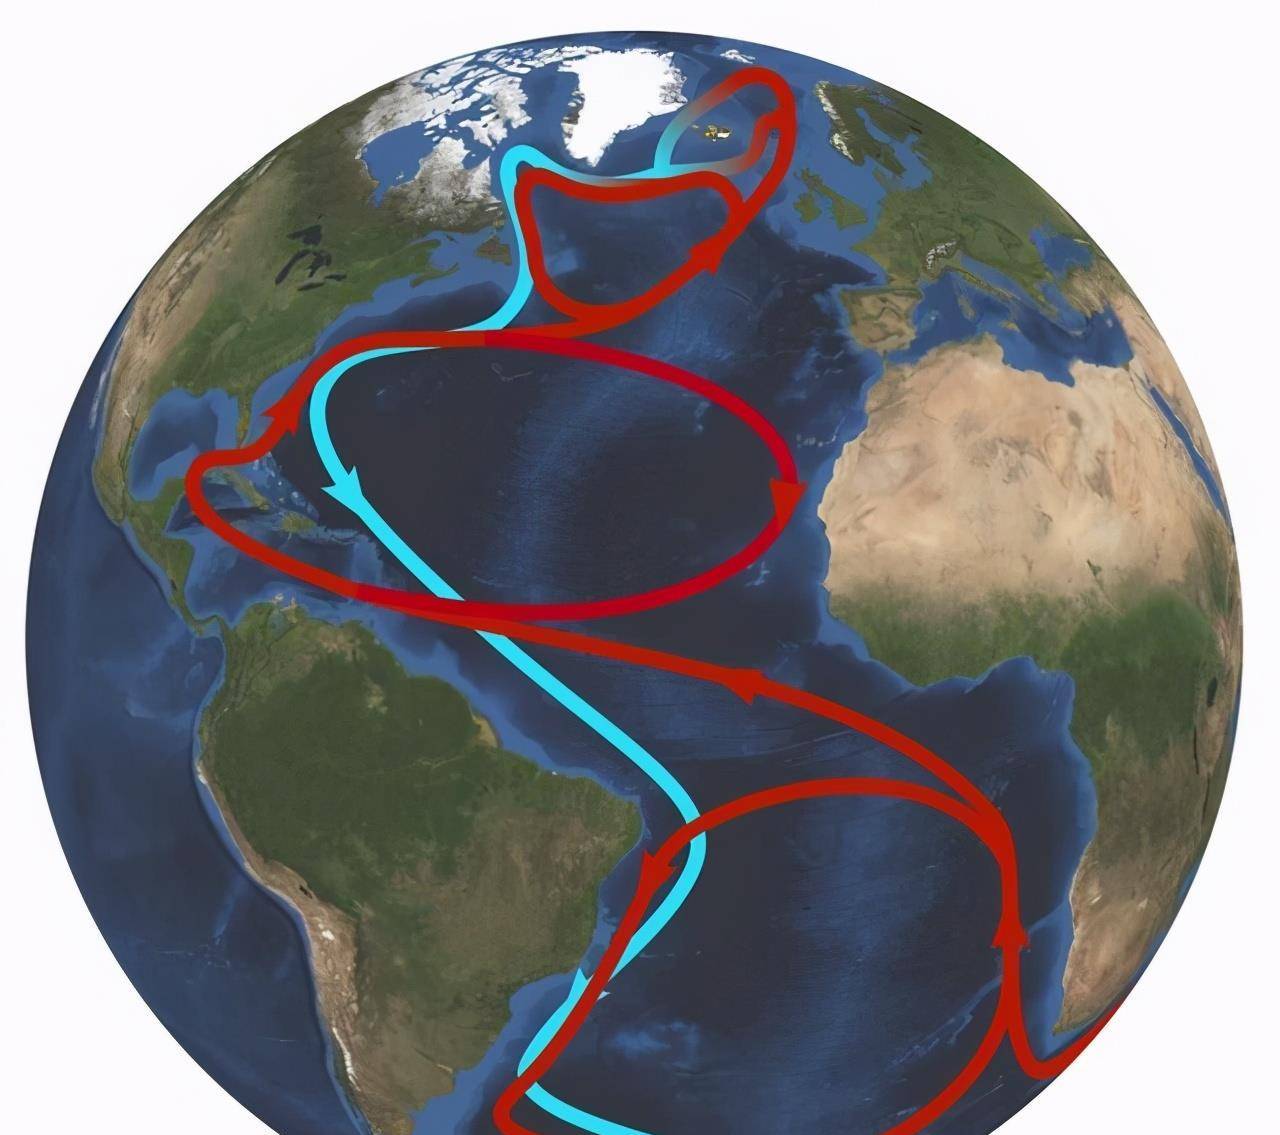 原创大西洋出现反常变化,专家:或影响全球气候发生巨变?